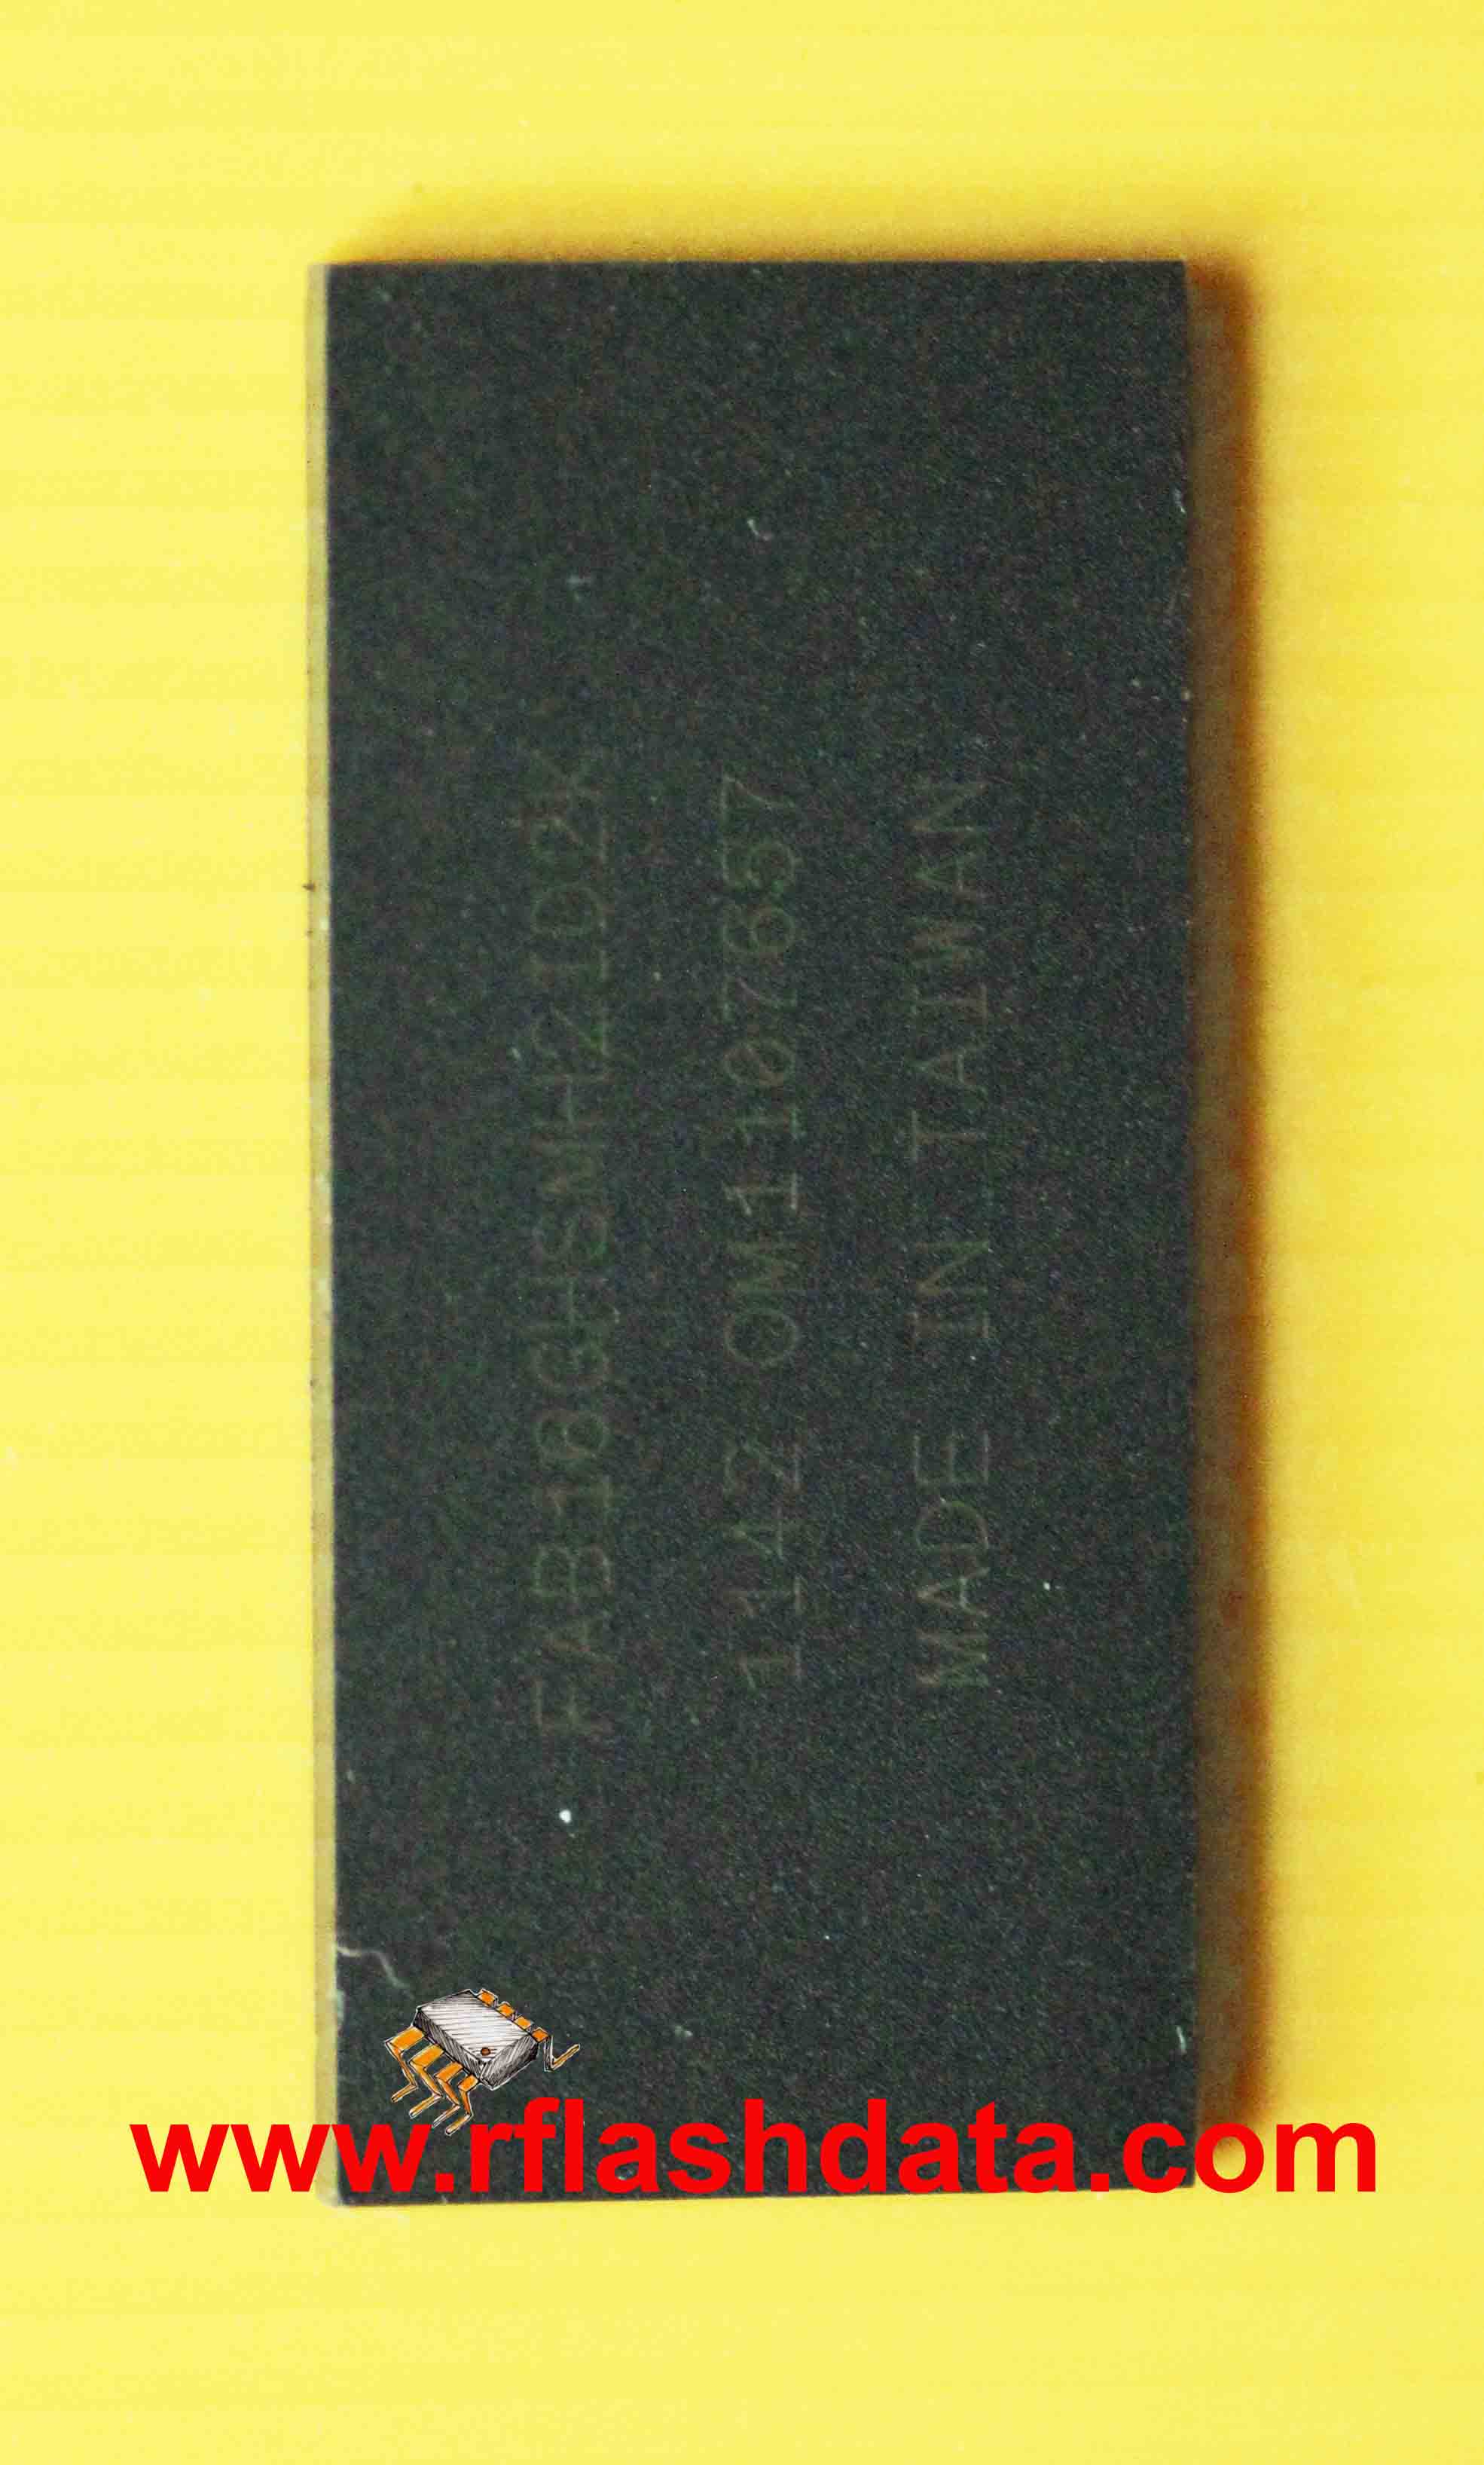 monolith flash chip